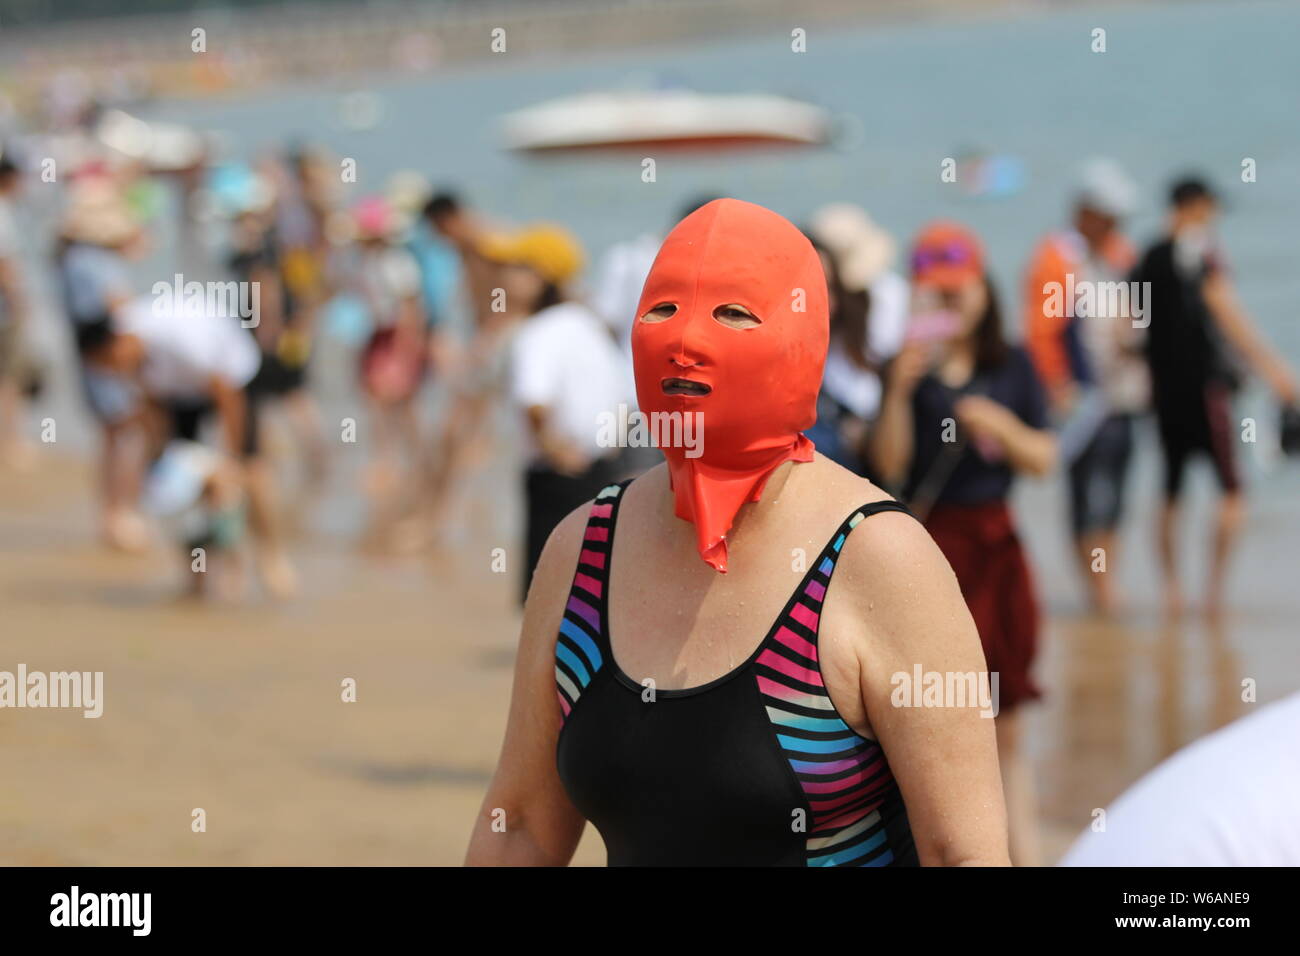 Eine Chinesische beachgoer trägt einen facekini wird dargestellt, an einem Beach Resort in Qingdao, Provinz Shandong, China, 20. Juni 2018. Stockfoto